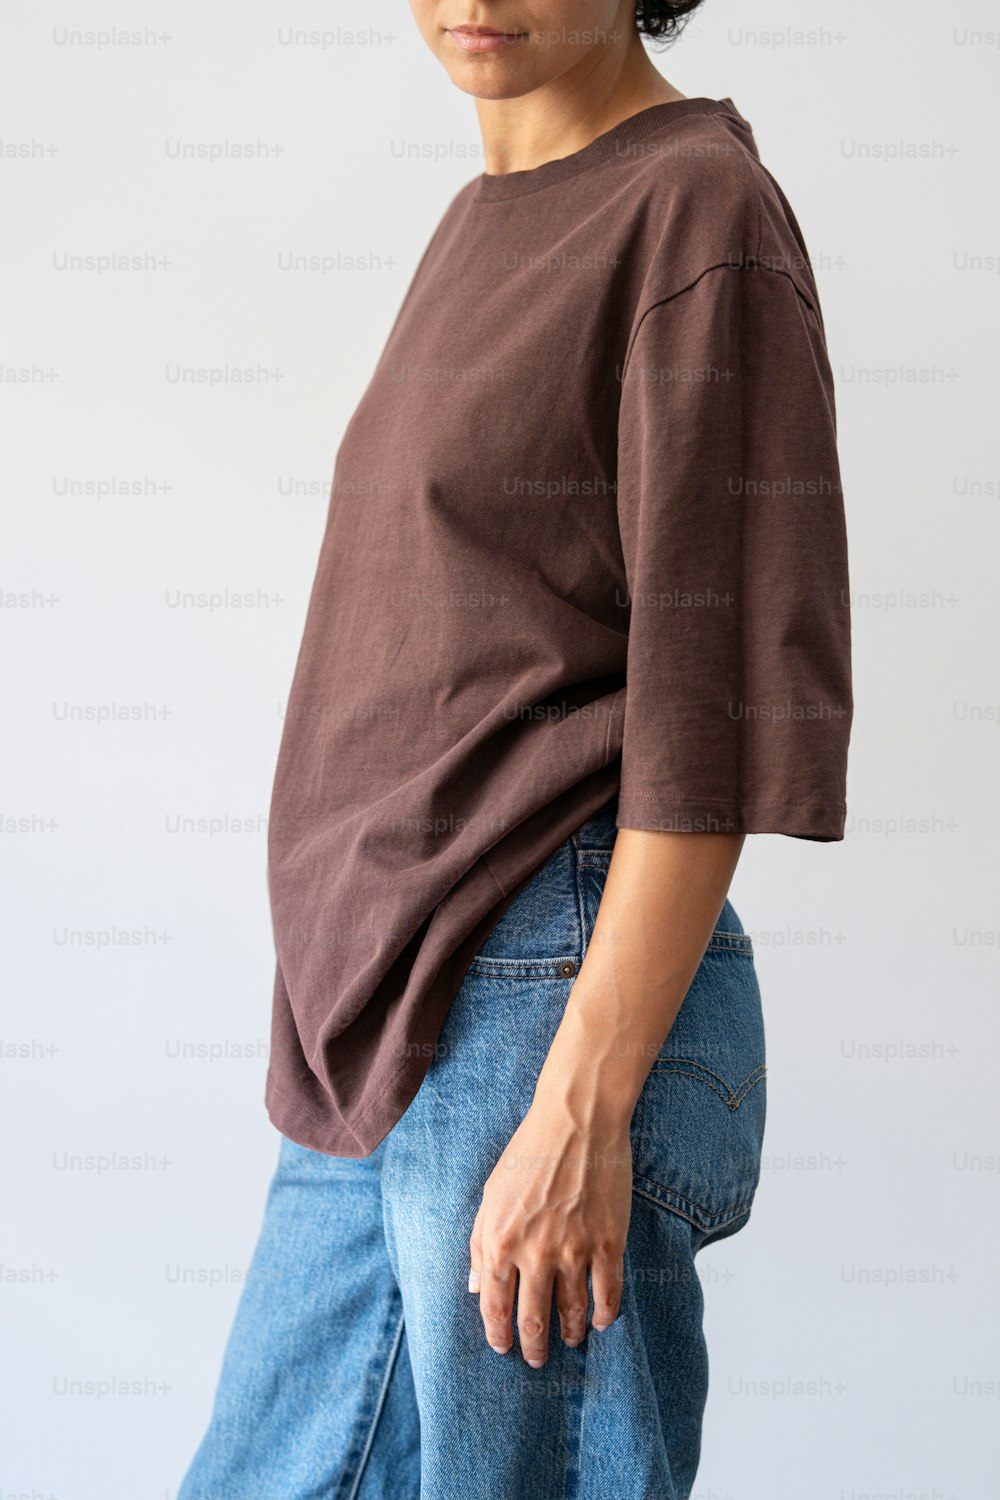 Una mujer con camisa marrón y jeans